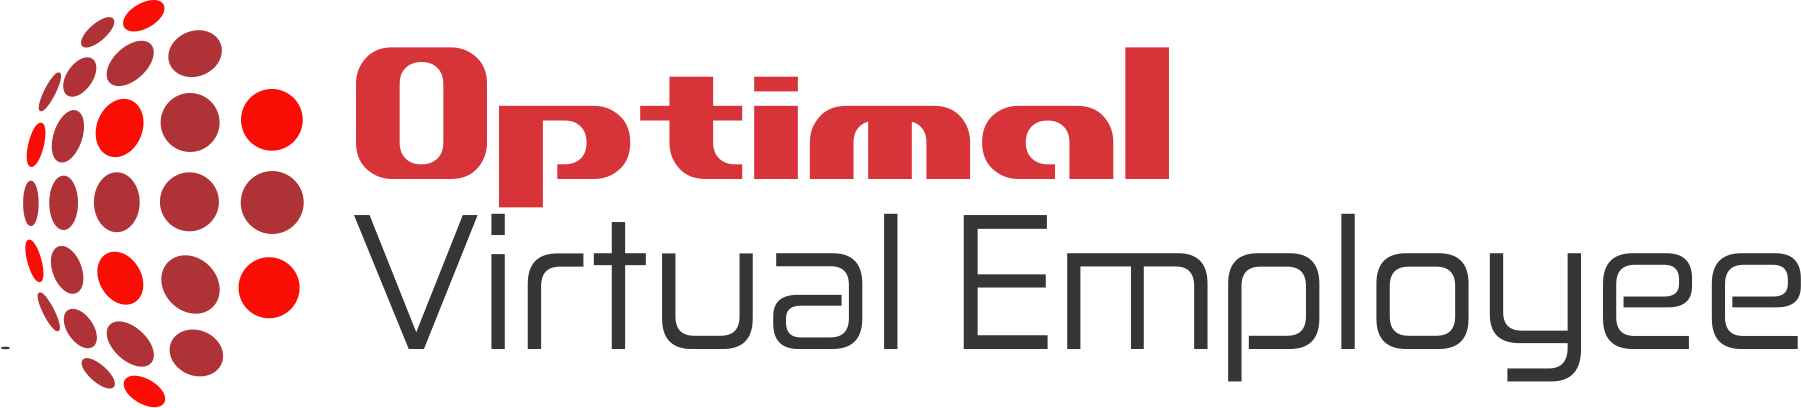 optimal virtual employee logo 